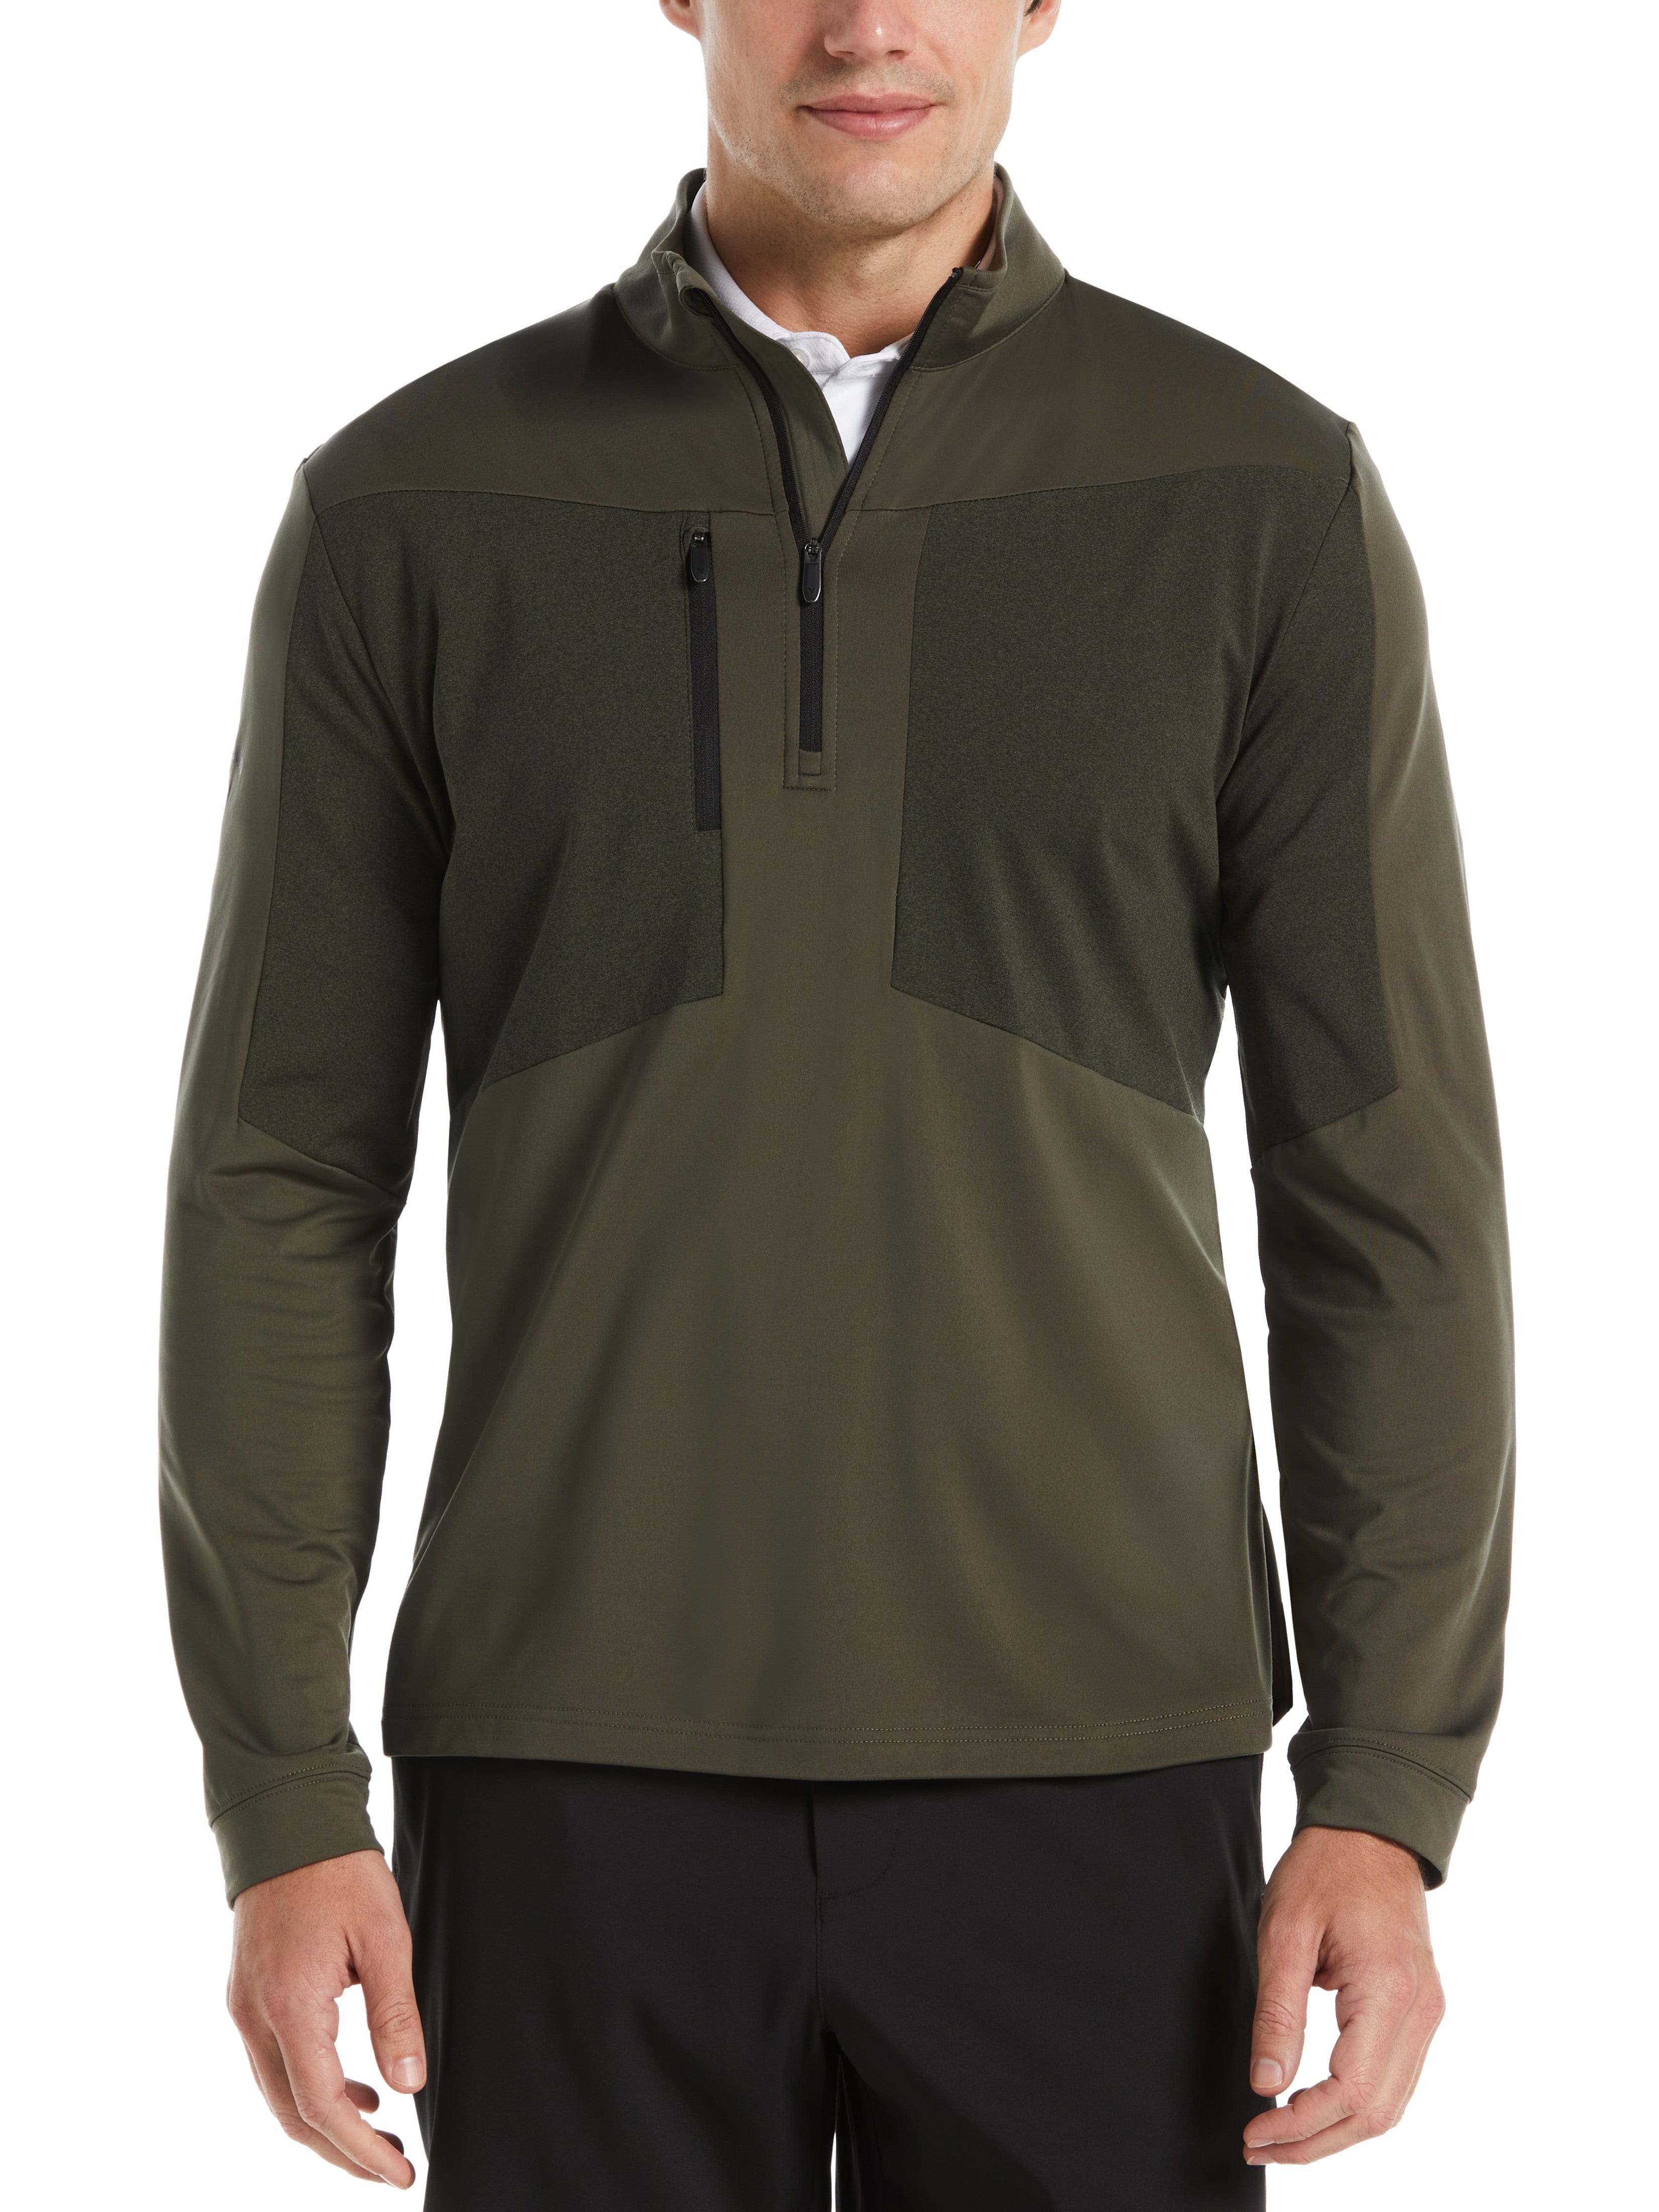 RYRJJ Men's Quarter Zip Pullover Fleece Lined Long Sleeve Lightweight  Thermal Henley Shirts Stand Collar Comfy Golf Running Sweatshirts(Navy,3XL)  